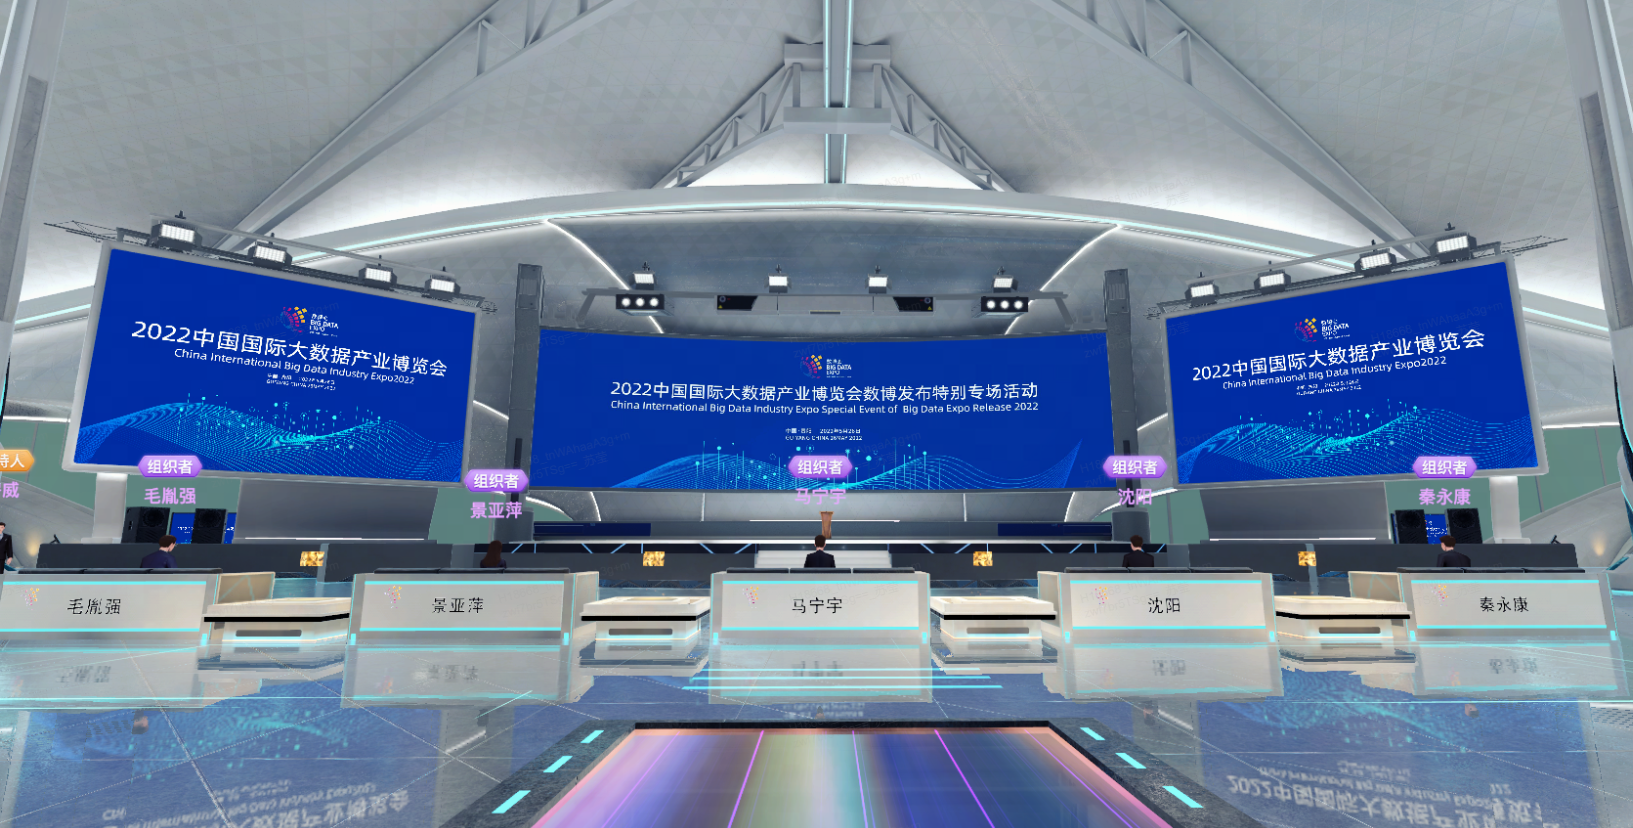 这是一张现代会议中心大厅的照片，显示有屏幕展示2022年中国国际信息化及软件服务交易会的信息，环境科技感强。